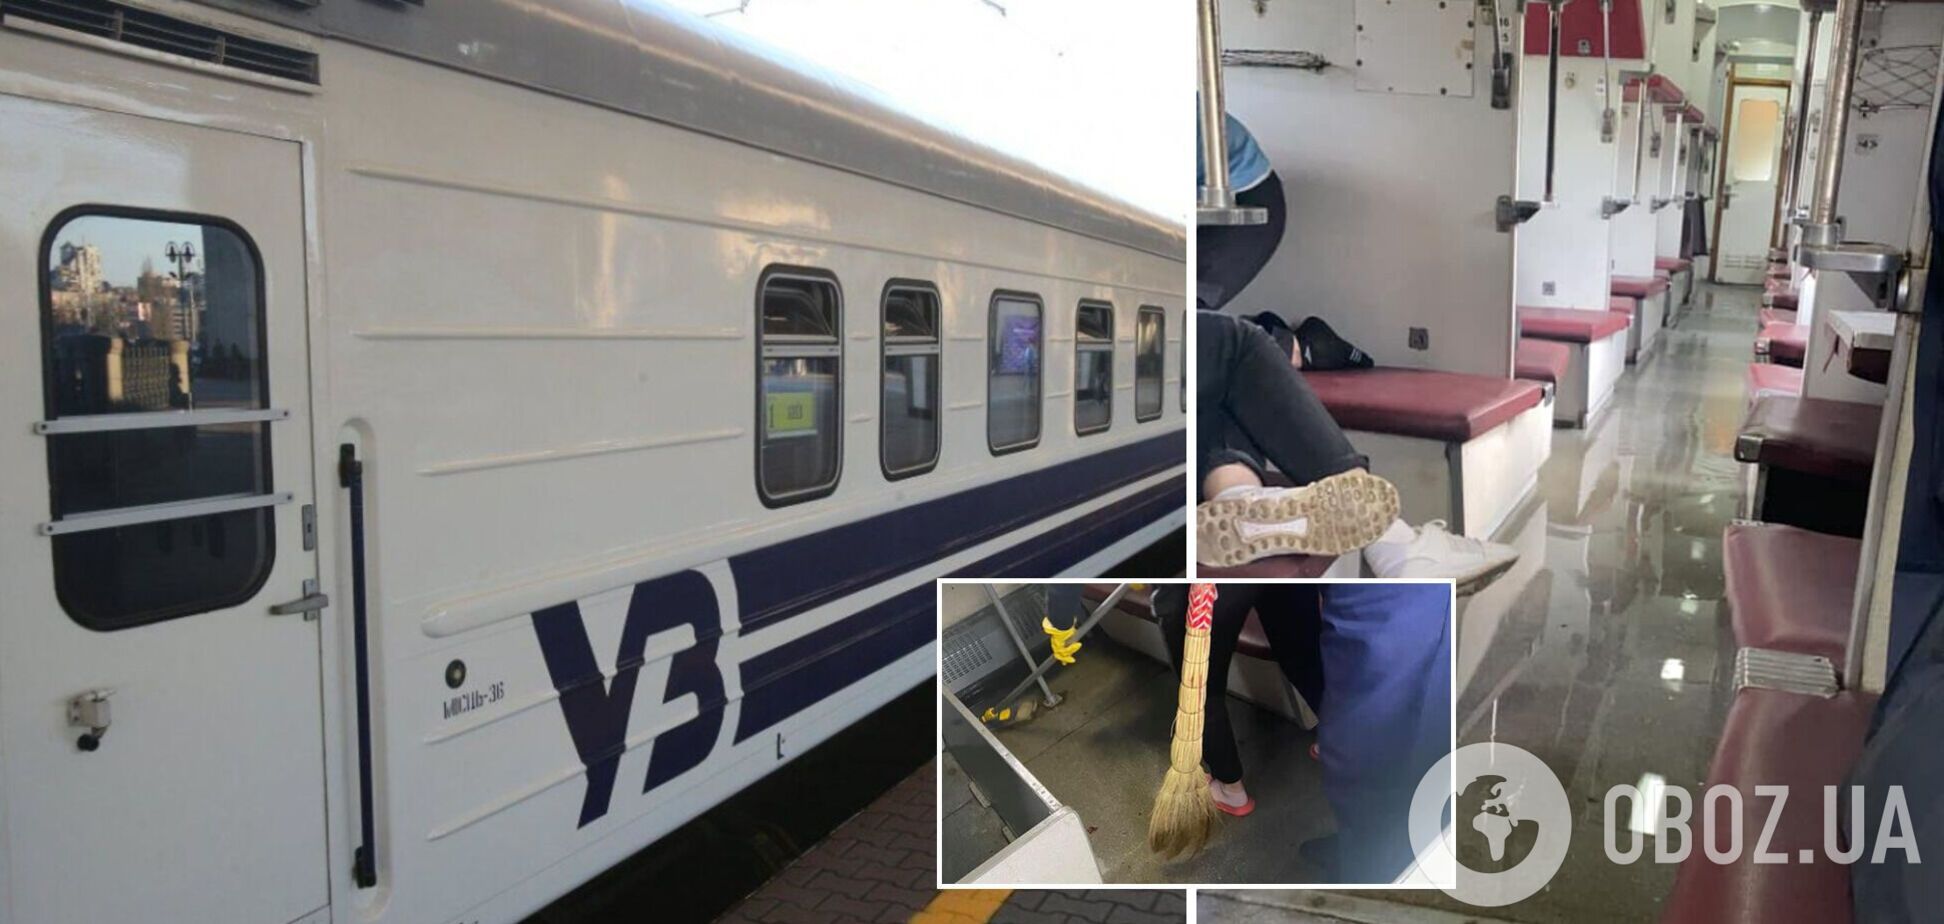 В вагоне 'Укрзалізниці' прорвало трубу: пассажиры опубликовали видео